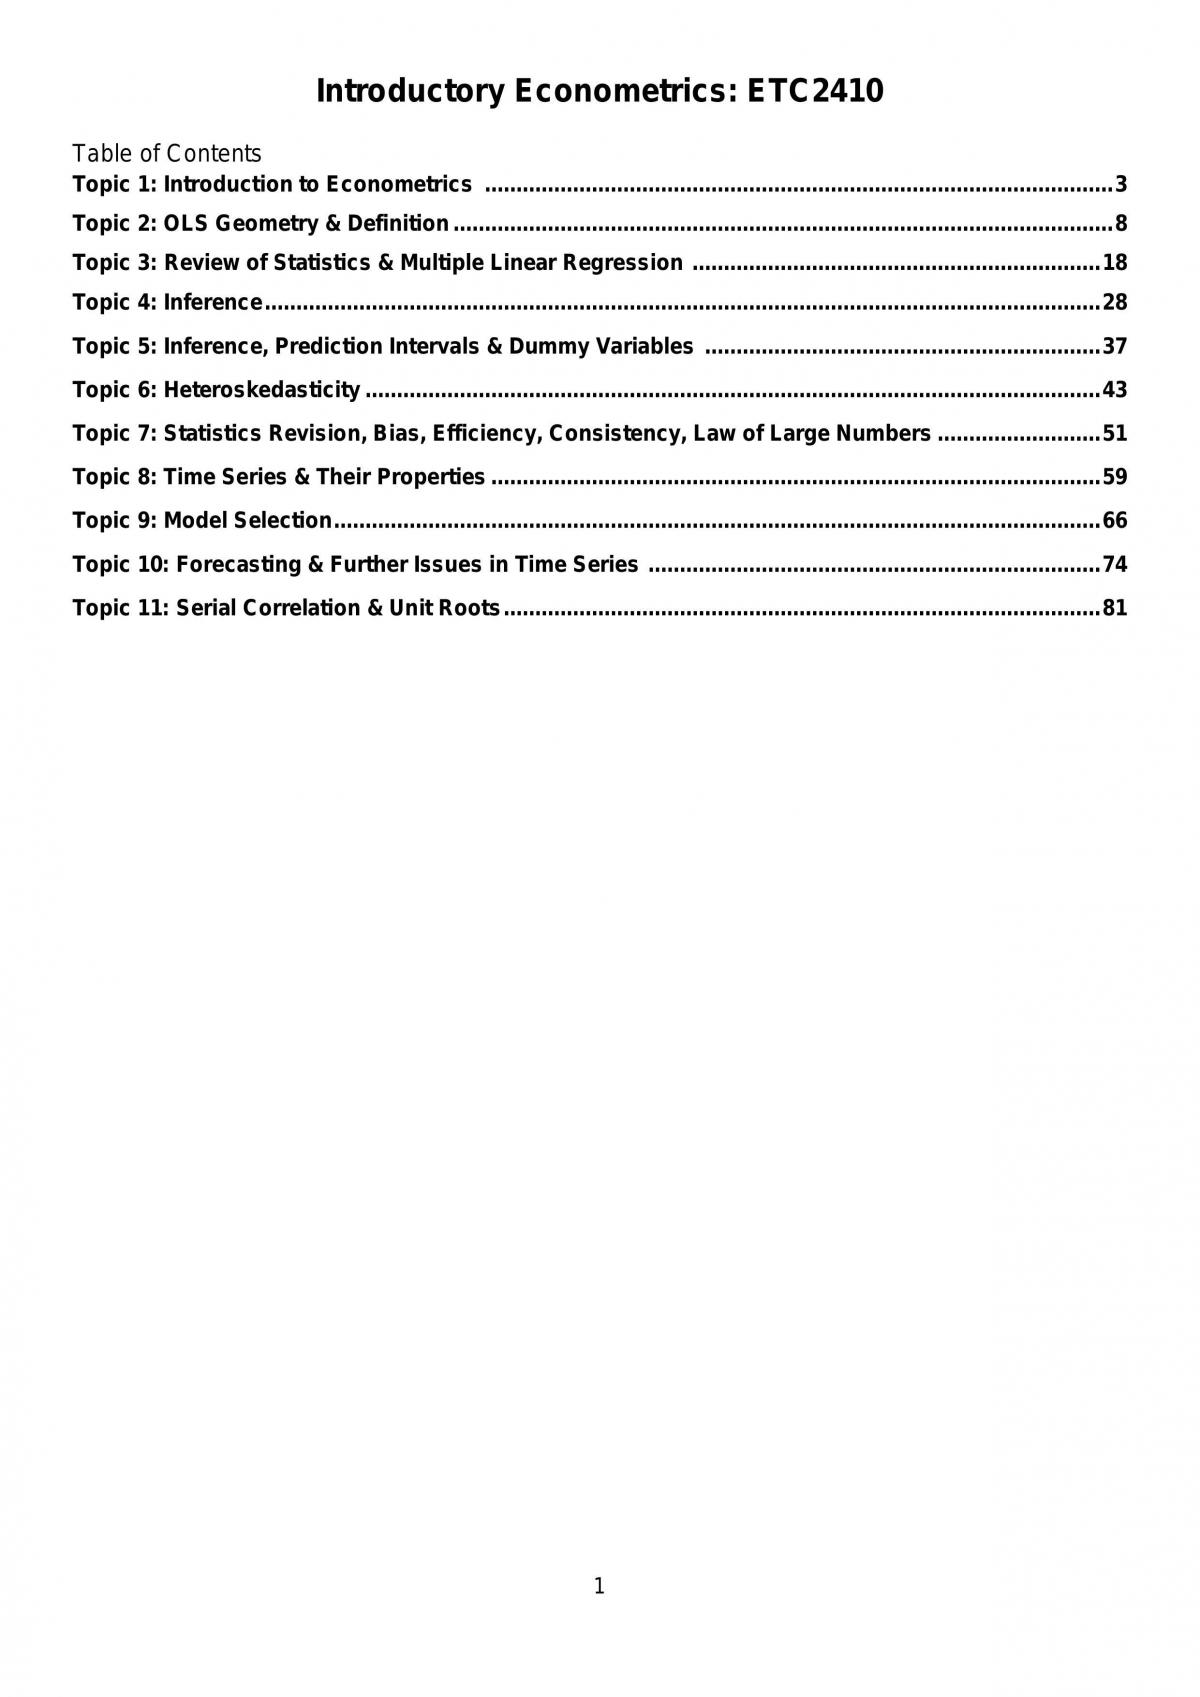 Intro Econometrics - ETC2410 - Page 1